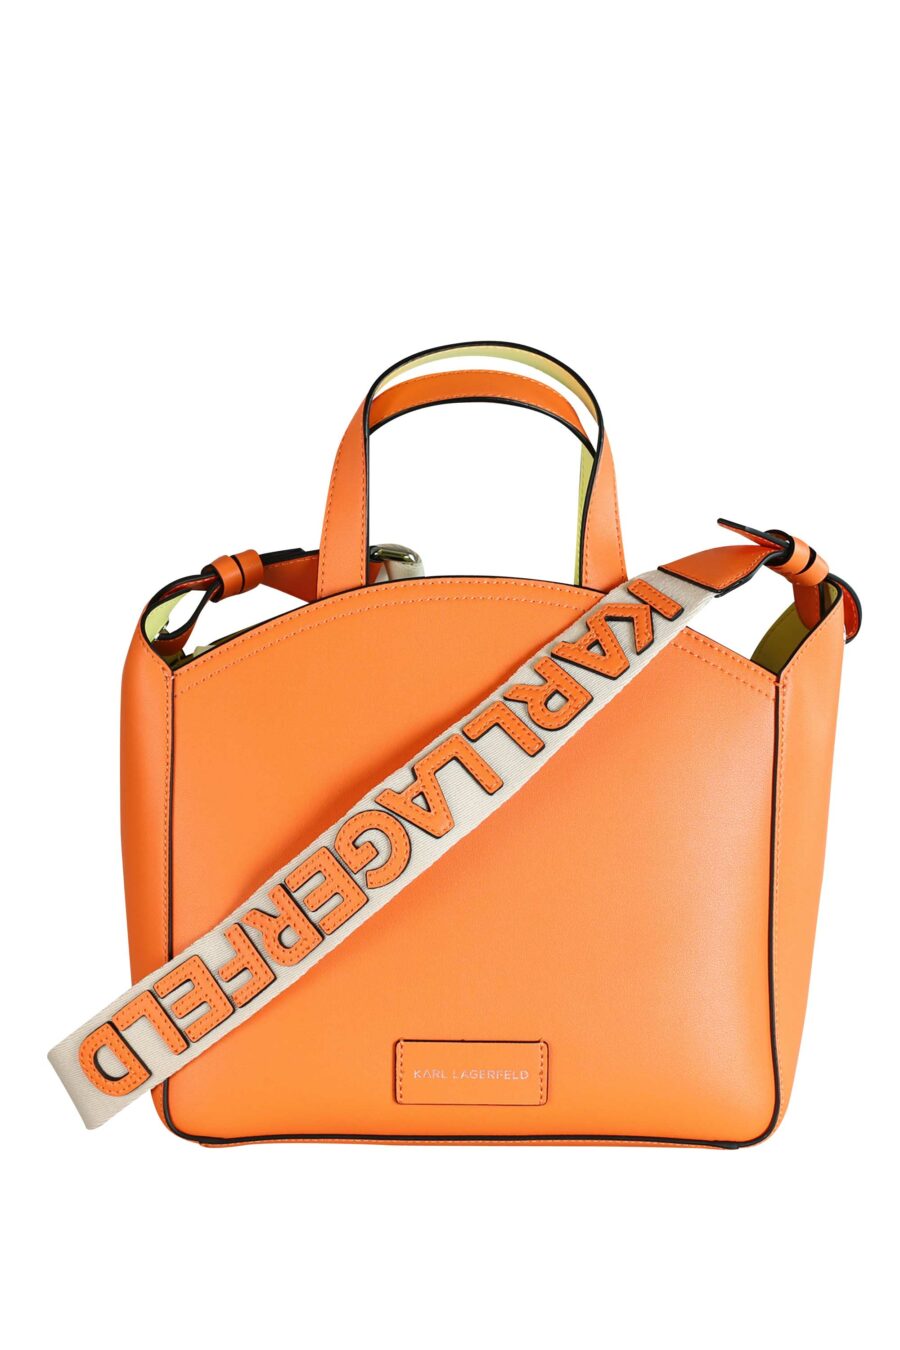 Tote bag naranja con logo "k/circle" monocromático - 8720744234692 3